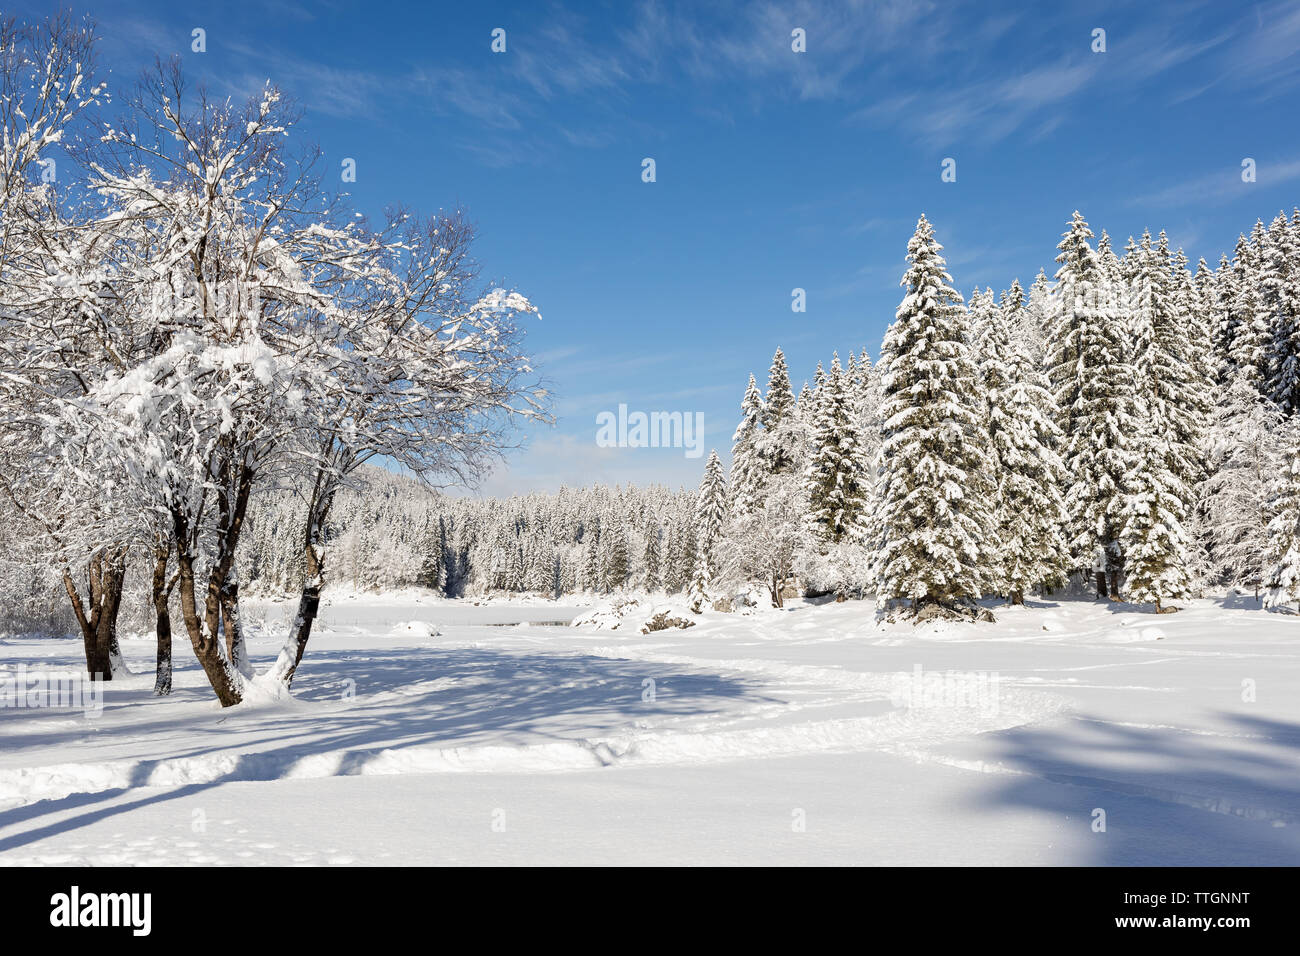 Snowy view at Laghi di Fusine in Winter. Friuli-Venezia Giulia, Italy Stock Photo